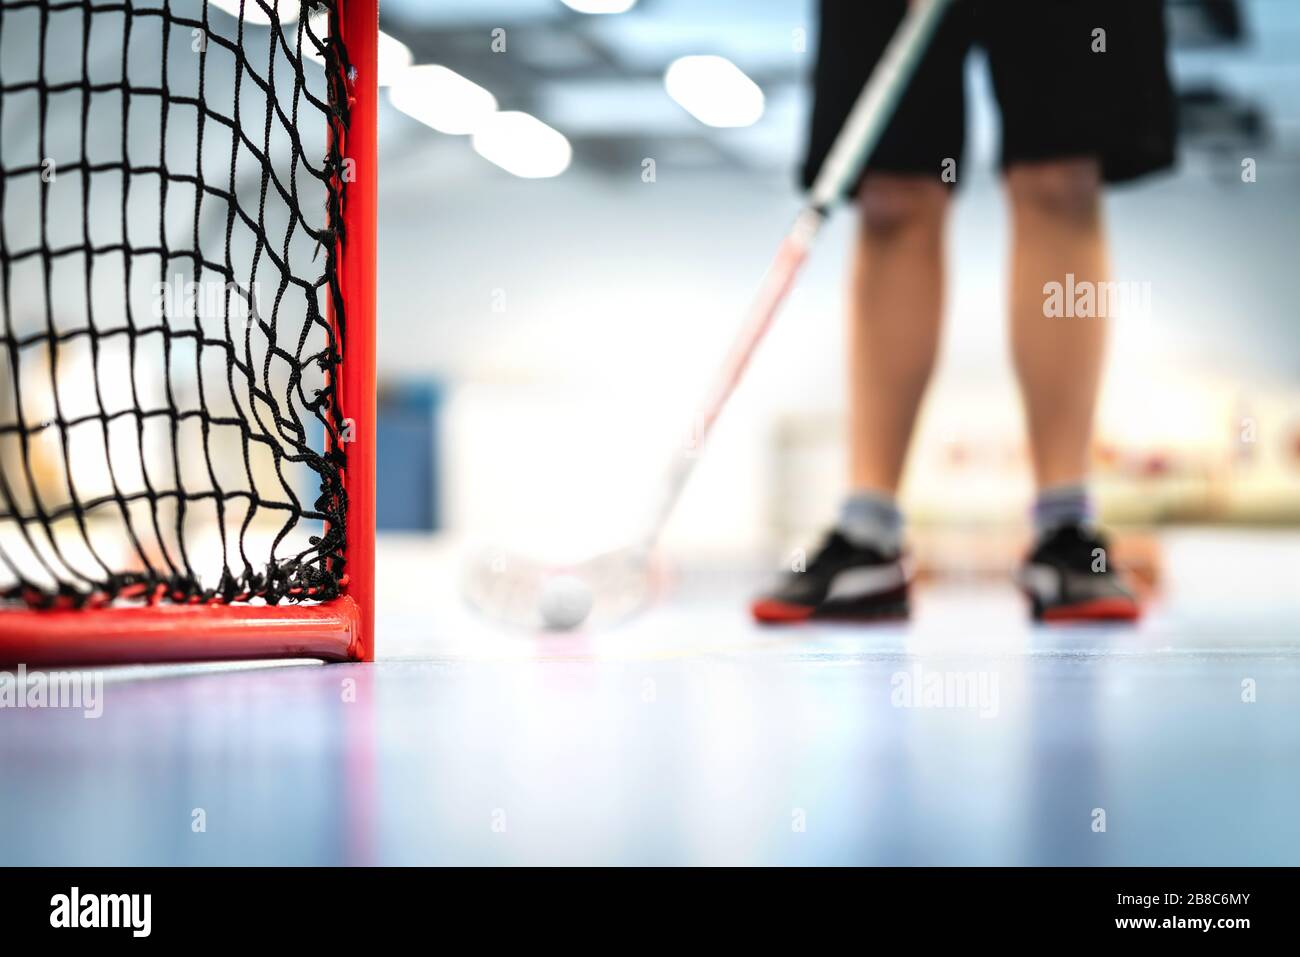 Gol de Floorball y red. Entrenamiento de jugadores en segundo plano. Hombre jugando al hockey sobre suelo en la cancha. Foto de stock